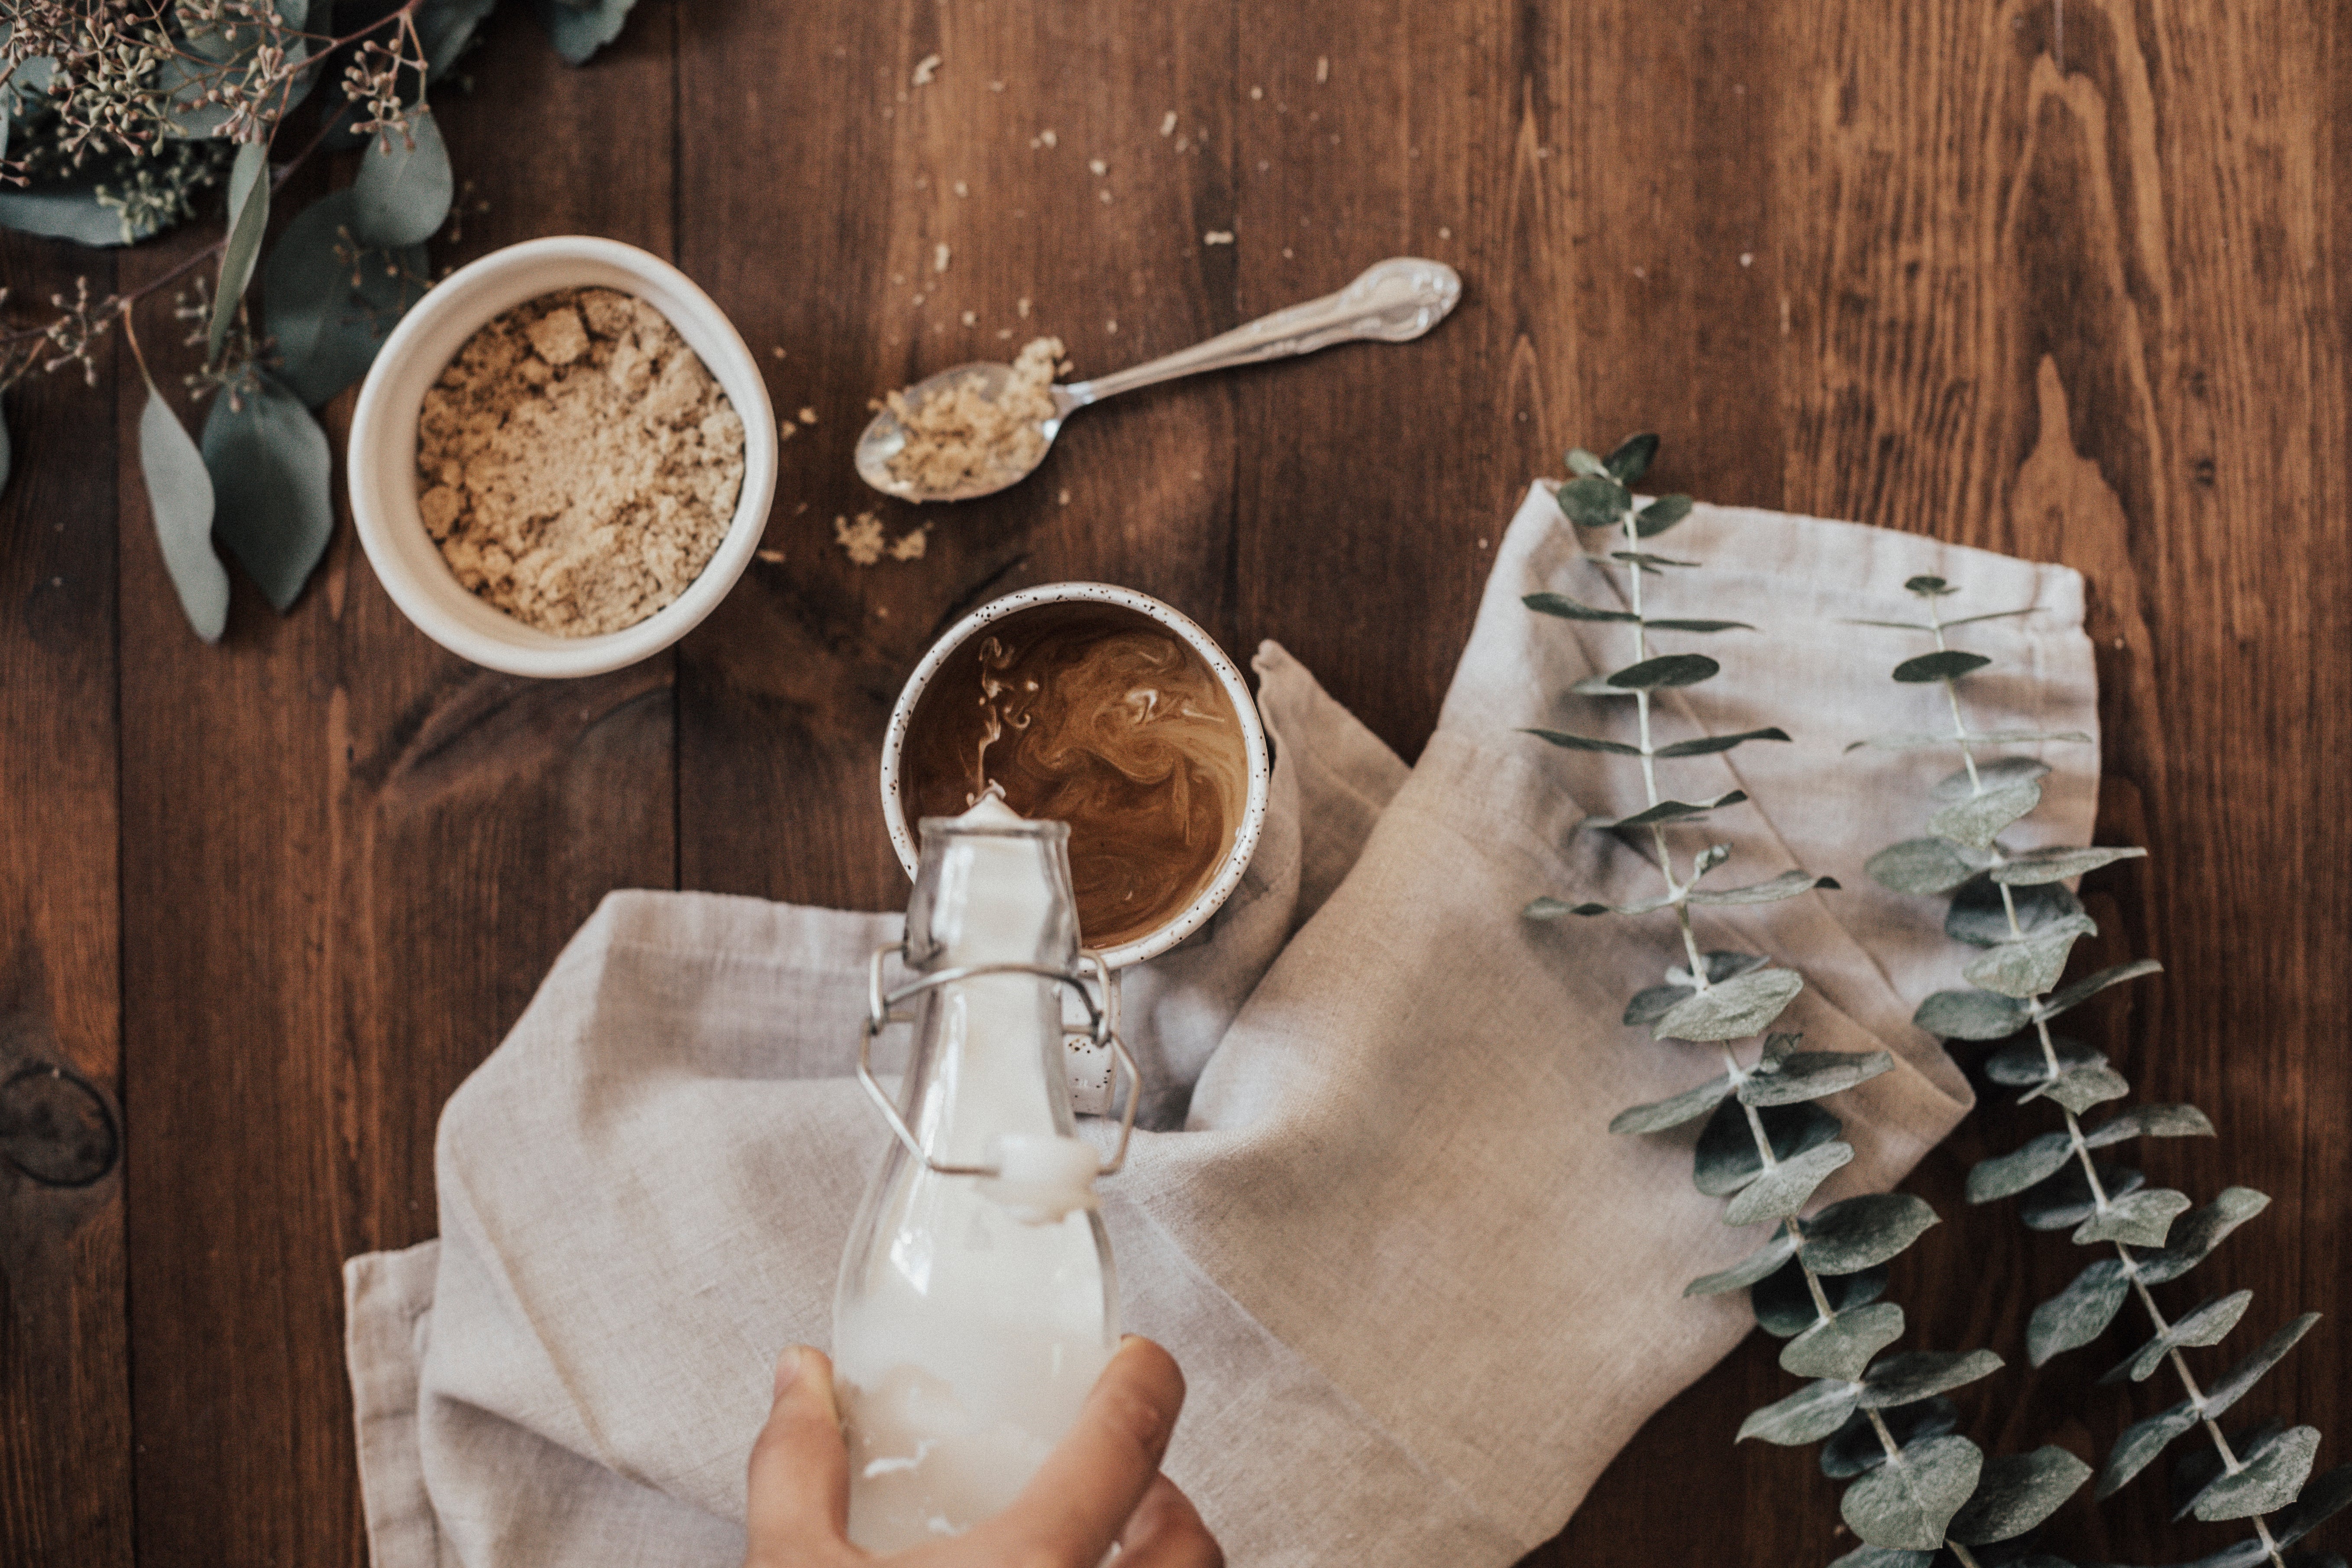 Café Liégeois reveals its sweet coffee recipe